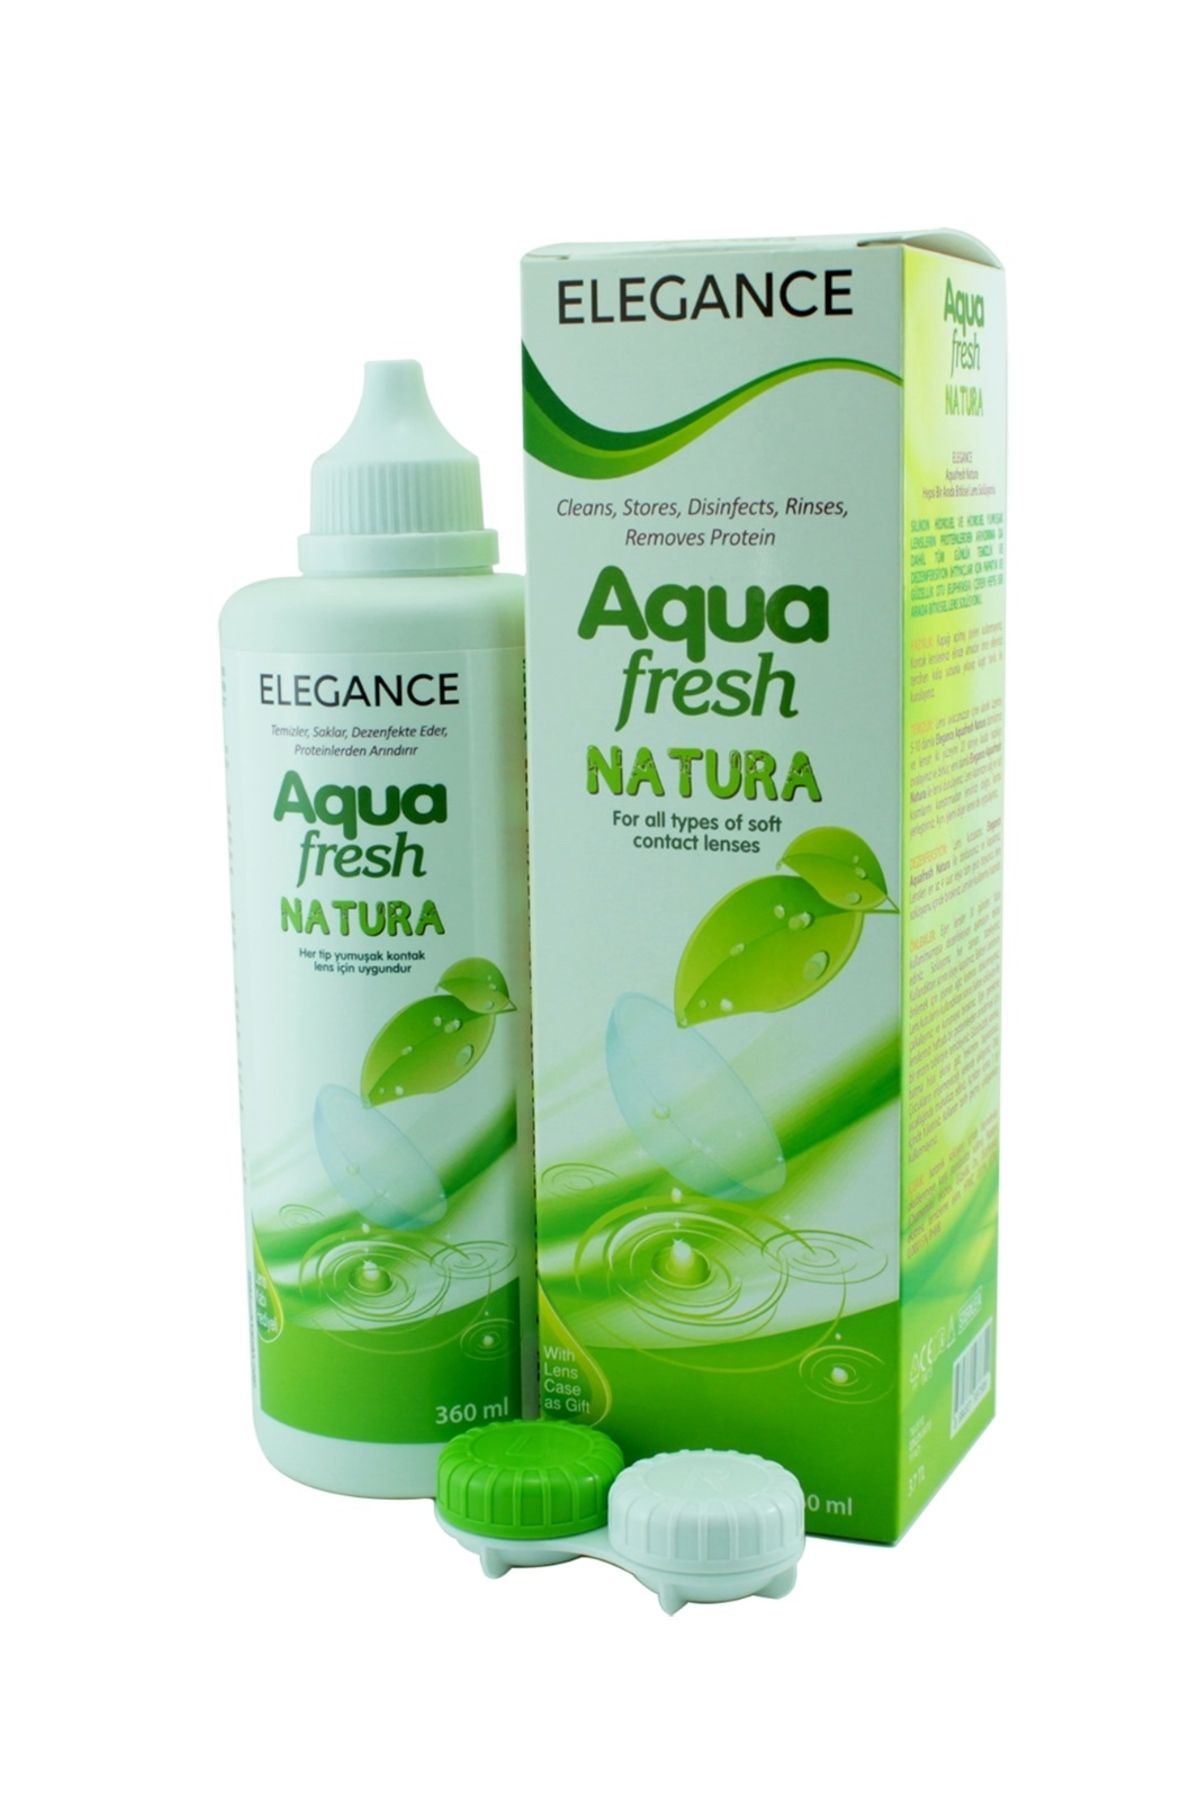 Aquafresh Elegance Aqua Fresh NATURA Lens Solüsyonu